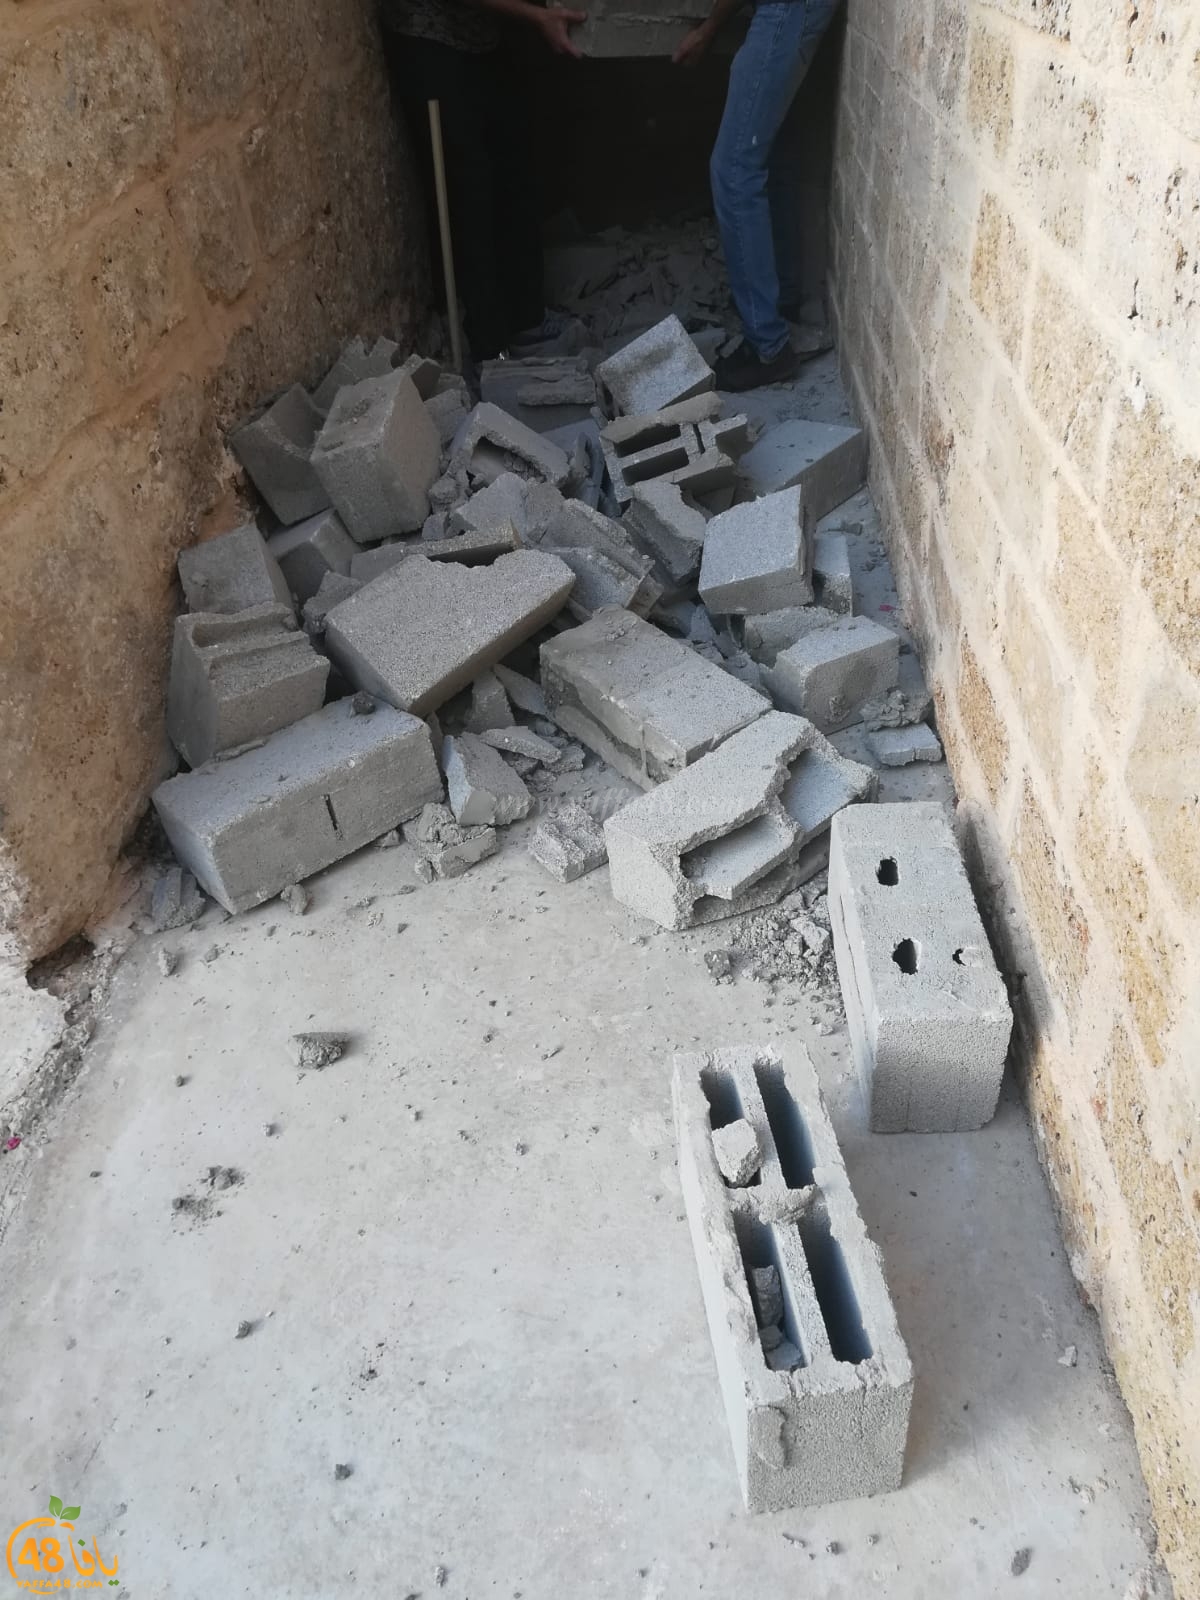  فيديو: إغلاق منافذ مركز الدعوة في يافا بالأسمنت والحجارة